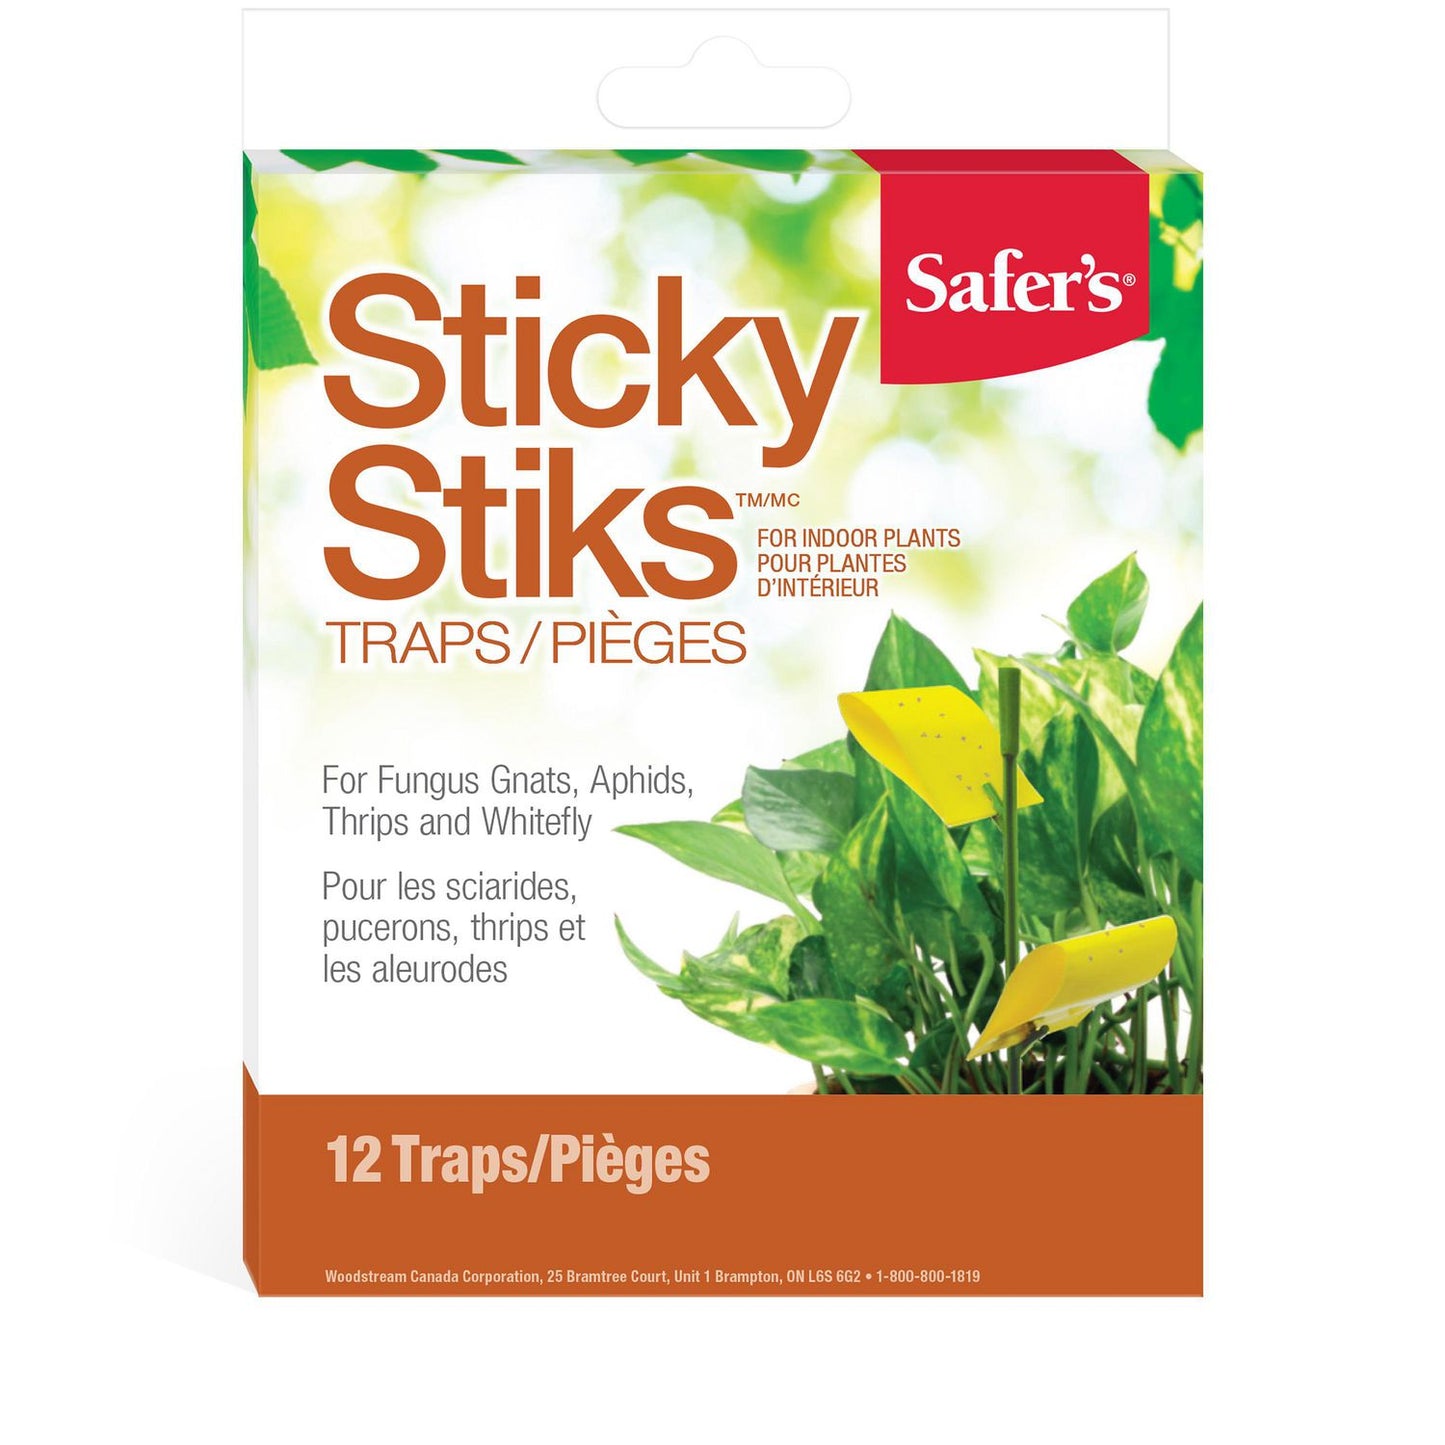 Safer's Sticky Stiks - Disease / Pest Control